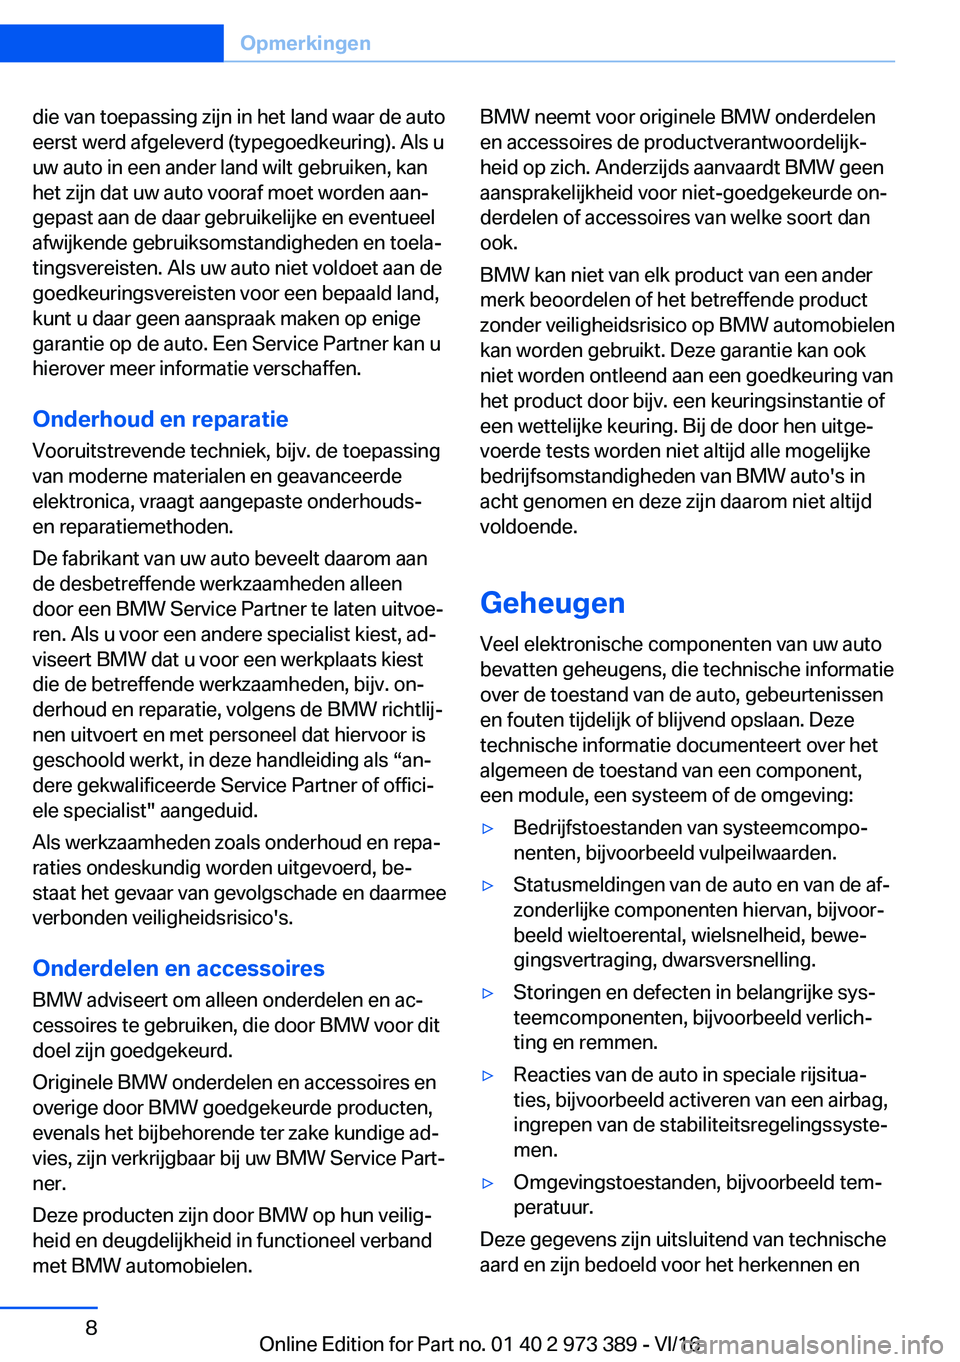 BMW 4 SERIES COUPE 2017  Instructieboekjes (in Dutch) �d�i�e� �v�a�n� �t�o�e�p�a�s�s�i�n�g� �z�i�j�n� �i�n� �h�e�t� �l�a�n�d� �w�a�a�r� �d�e� �a�u�t�o
�e�e�r�s�t� �w�e�r�d� �a�f�g�e�l�e�v�e�r�d� �(�t�y�p�e�g�o�e�d�k�e�u�r�i�n�g�)�.� �A�l�s� �u �u�w� �a�u